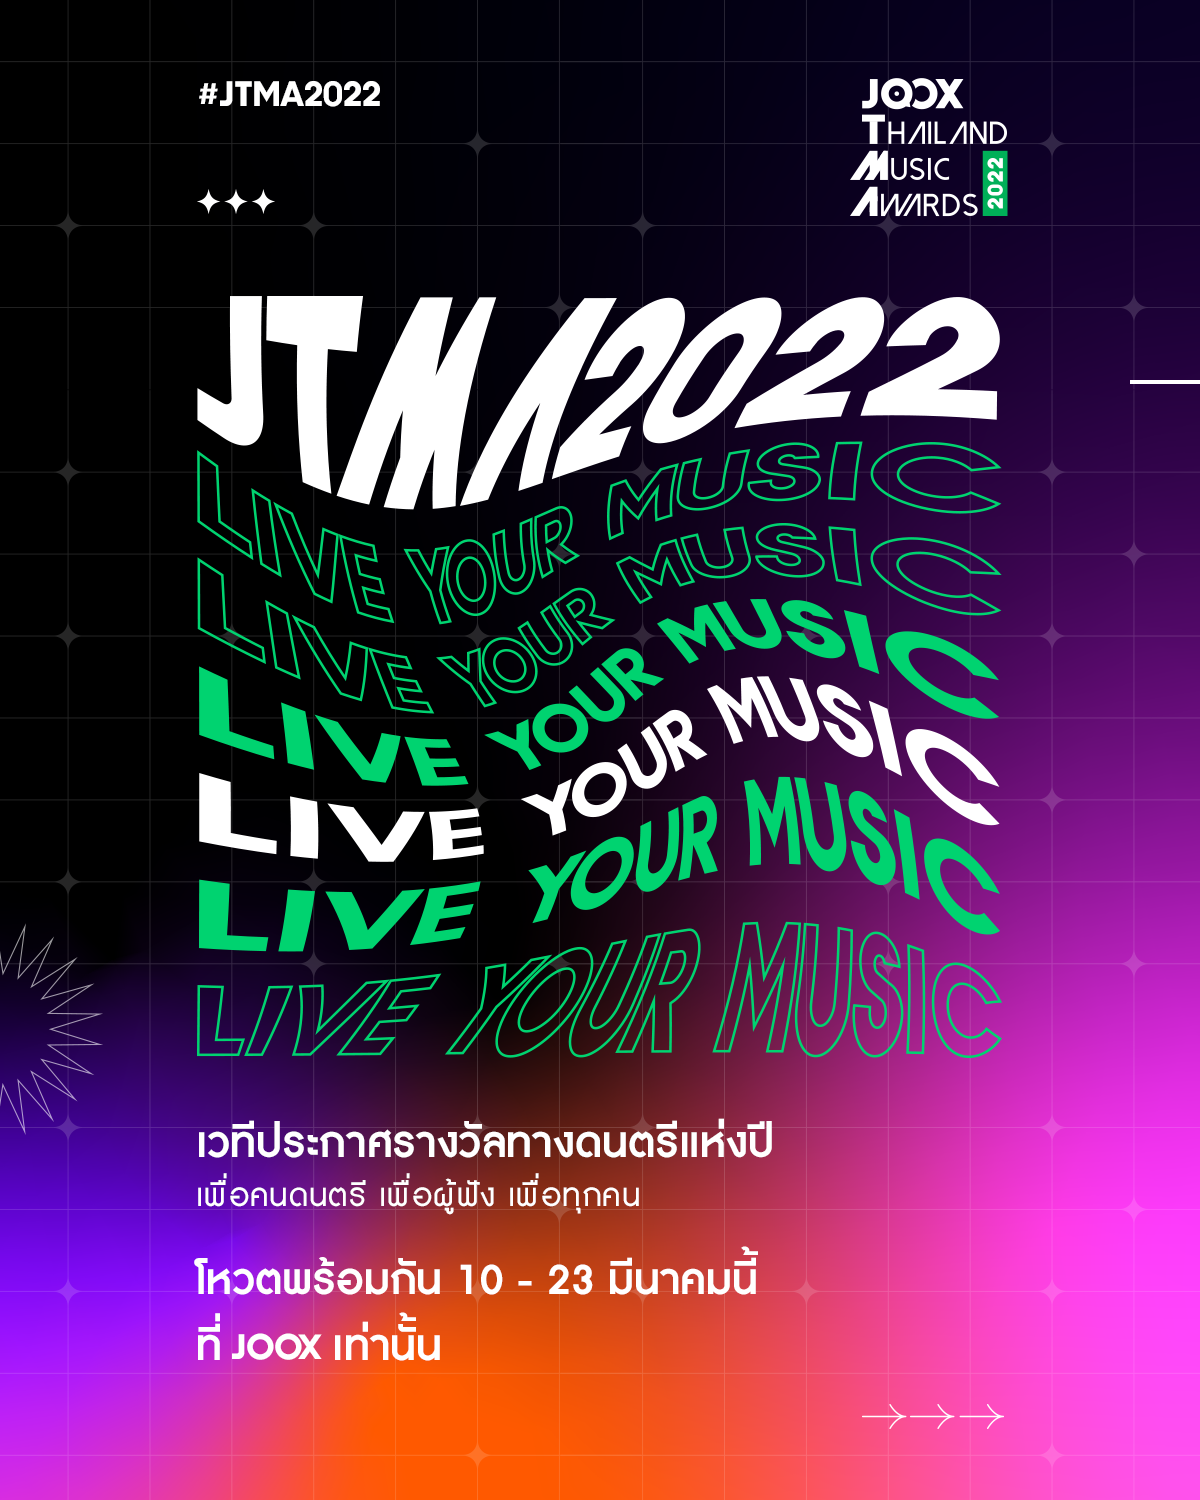 เตรียมตัวให้พร้อม!! งานประกาศรางวัลทางดนตรีที่ยิ่งใหญ่ที่สุด ‘JTMA 2022’ กลับมาแล้ว!! คอนเซปต์ Live Your Music พบความสนุกจัดเต็ม พร้อมลุ้นไปกับ 12 รางวัลแห่งปี เปิดโหวตพร้อมกันทั่วประเทศ 10 - 23 มี.ค นี้